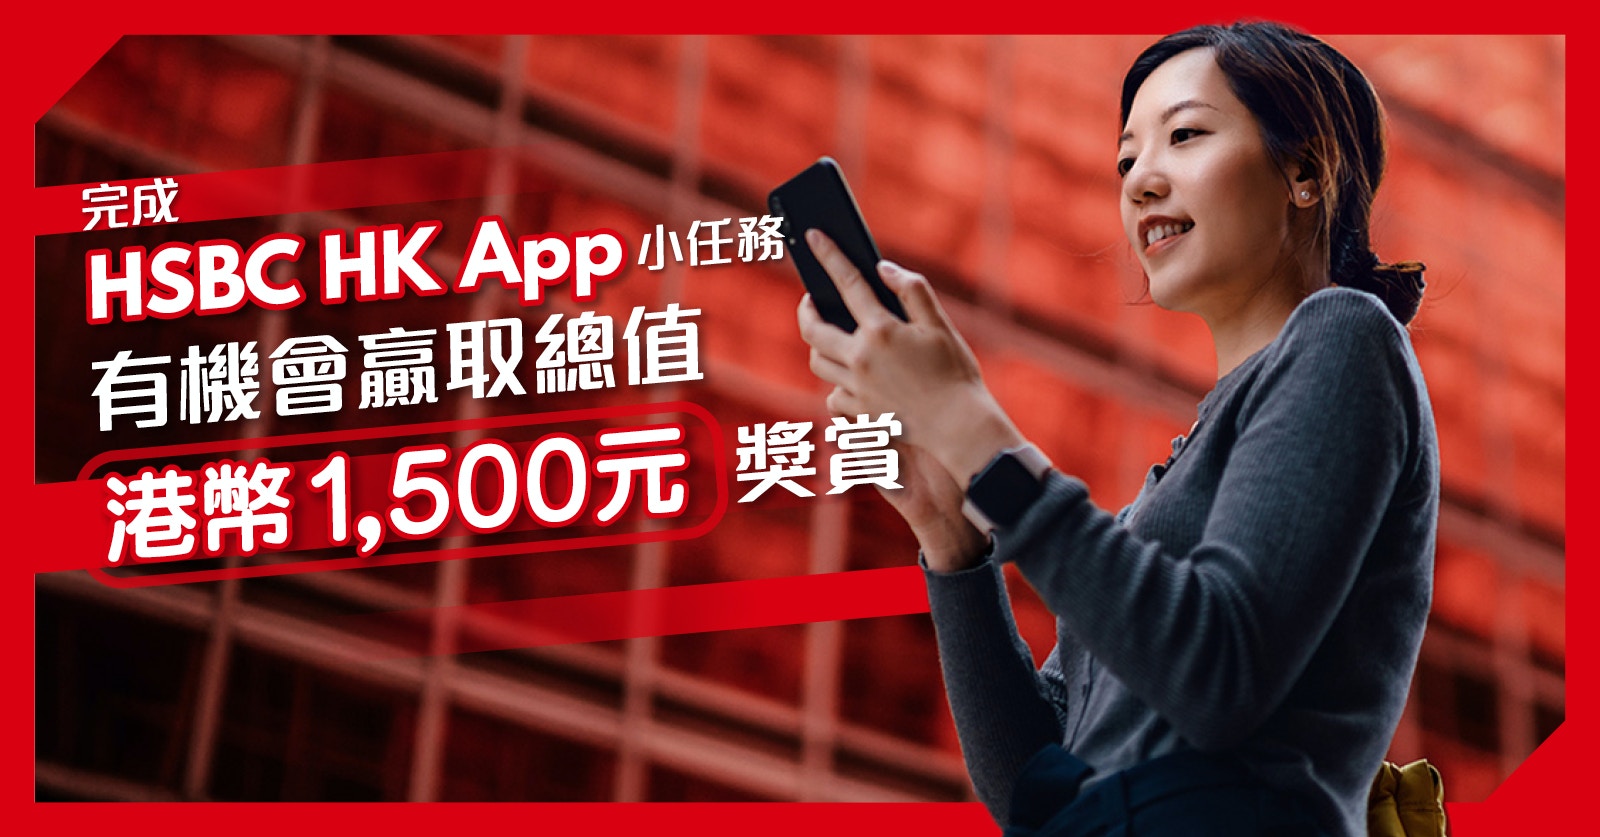 做任務贏港幣1,500元獎賞HSBC HK App　8大實用功能幫你慳時間